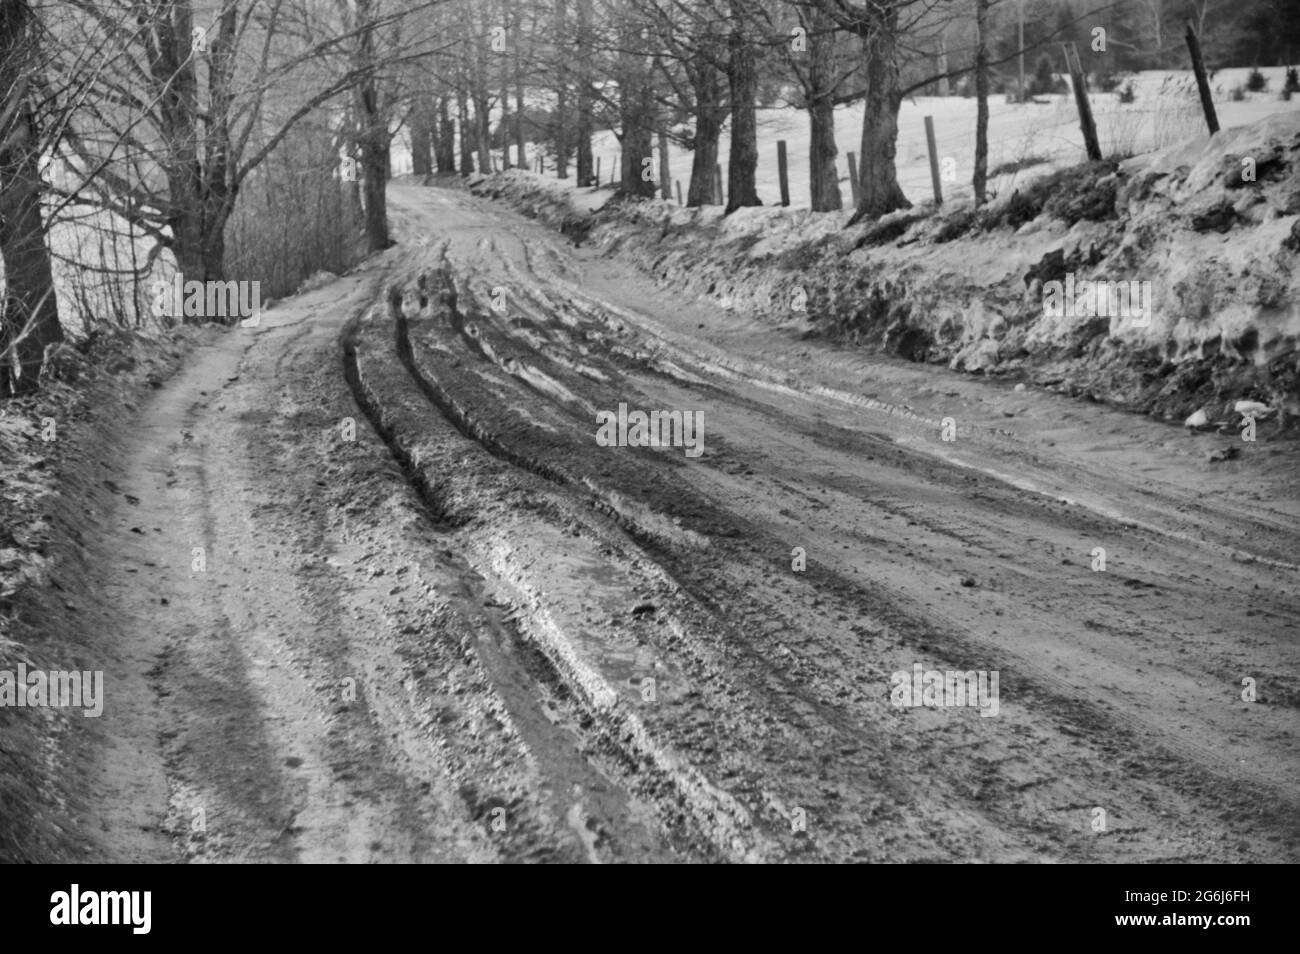 Strada fangosa dopo scongelamento, vicino a Stowe, Vermont, circa 1940 Foto Stock